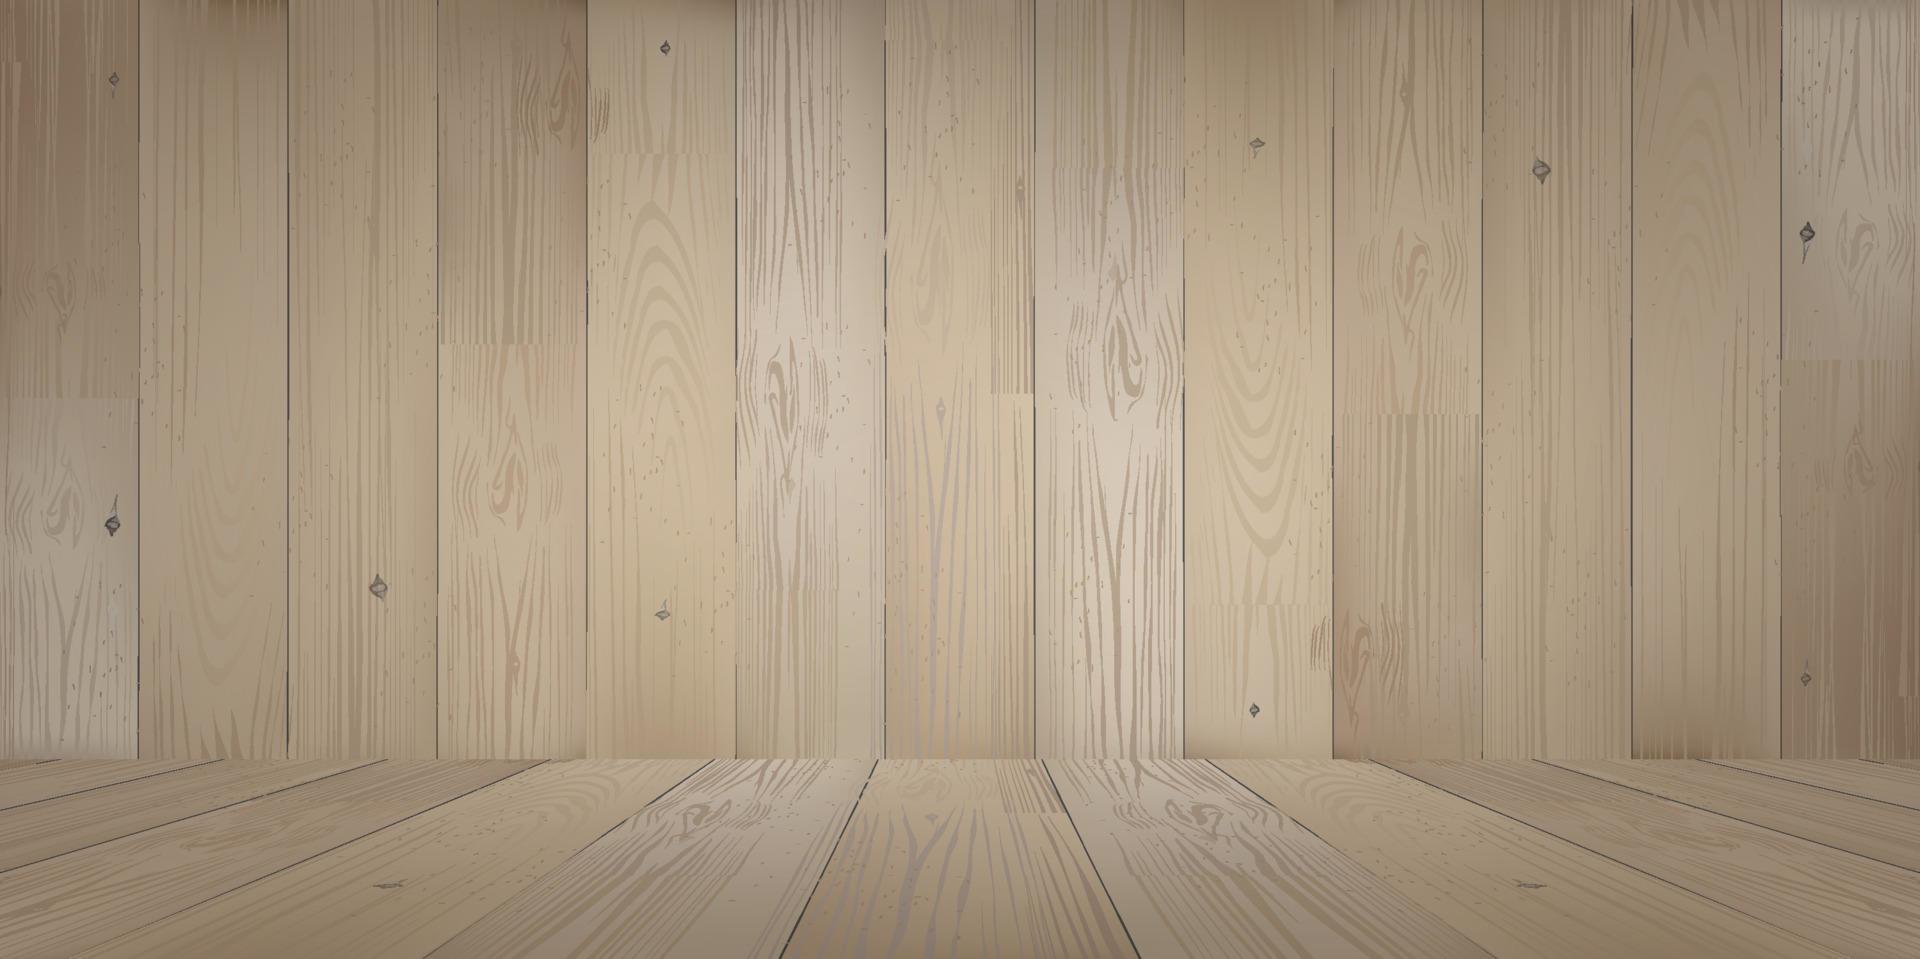 Fondo de espacio de sala de madera con piso de madera en perspectiva. vector. vector